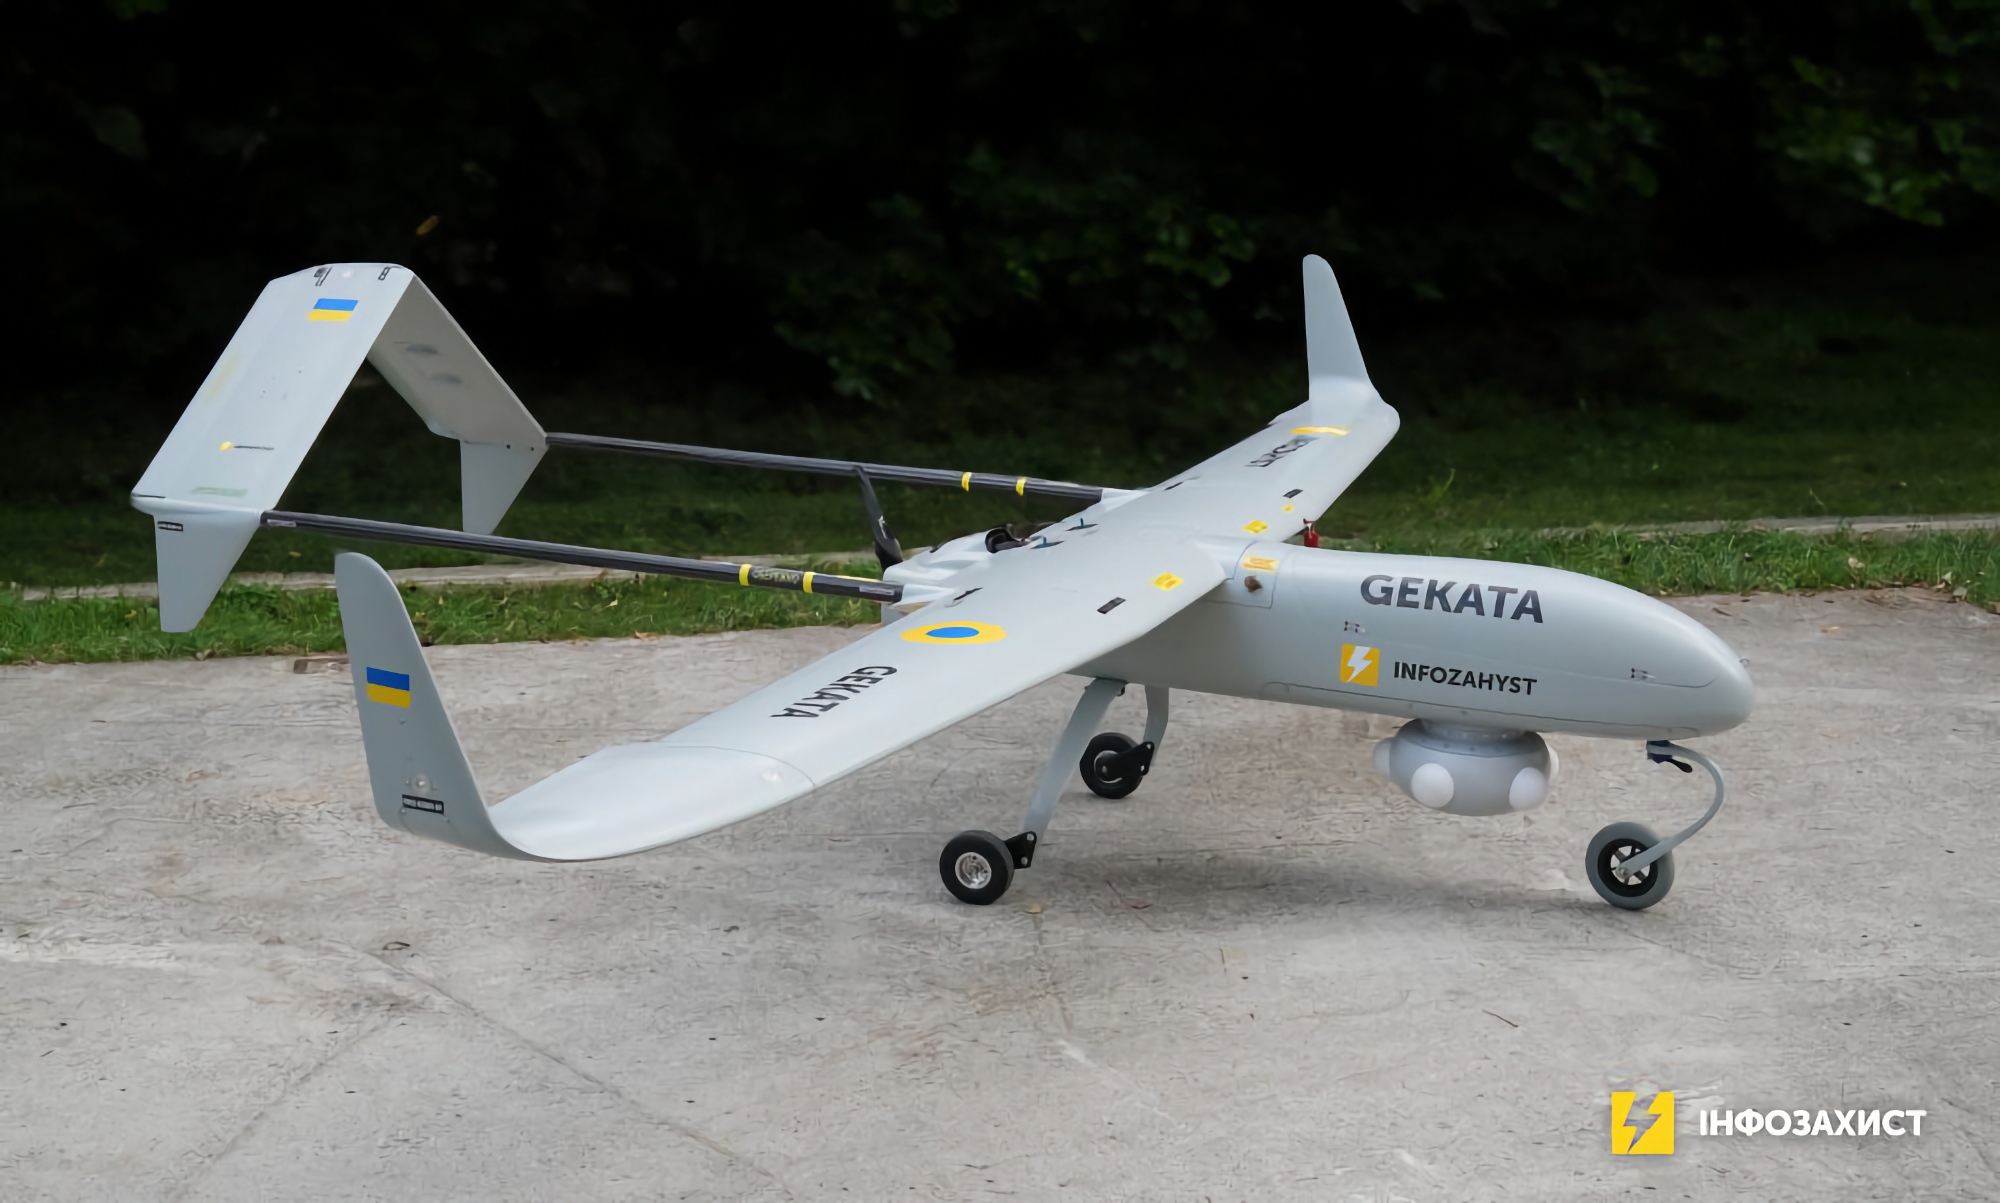 Ukraina börjar testa en ny spanings-UAV, Gekata, som kommer att kunna stanna i luften i upp till 12 timmar och upptäcka mål på ett avstånd av upp till 450 km